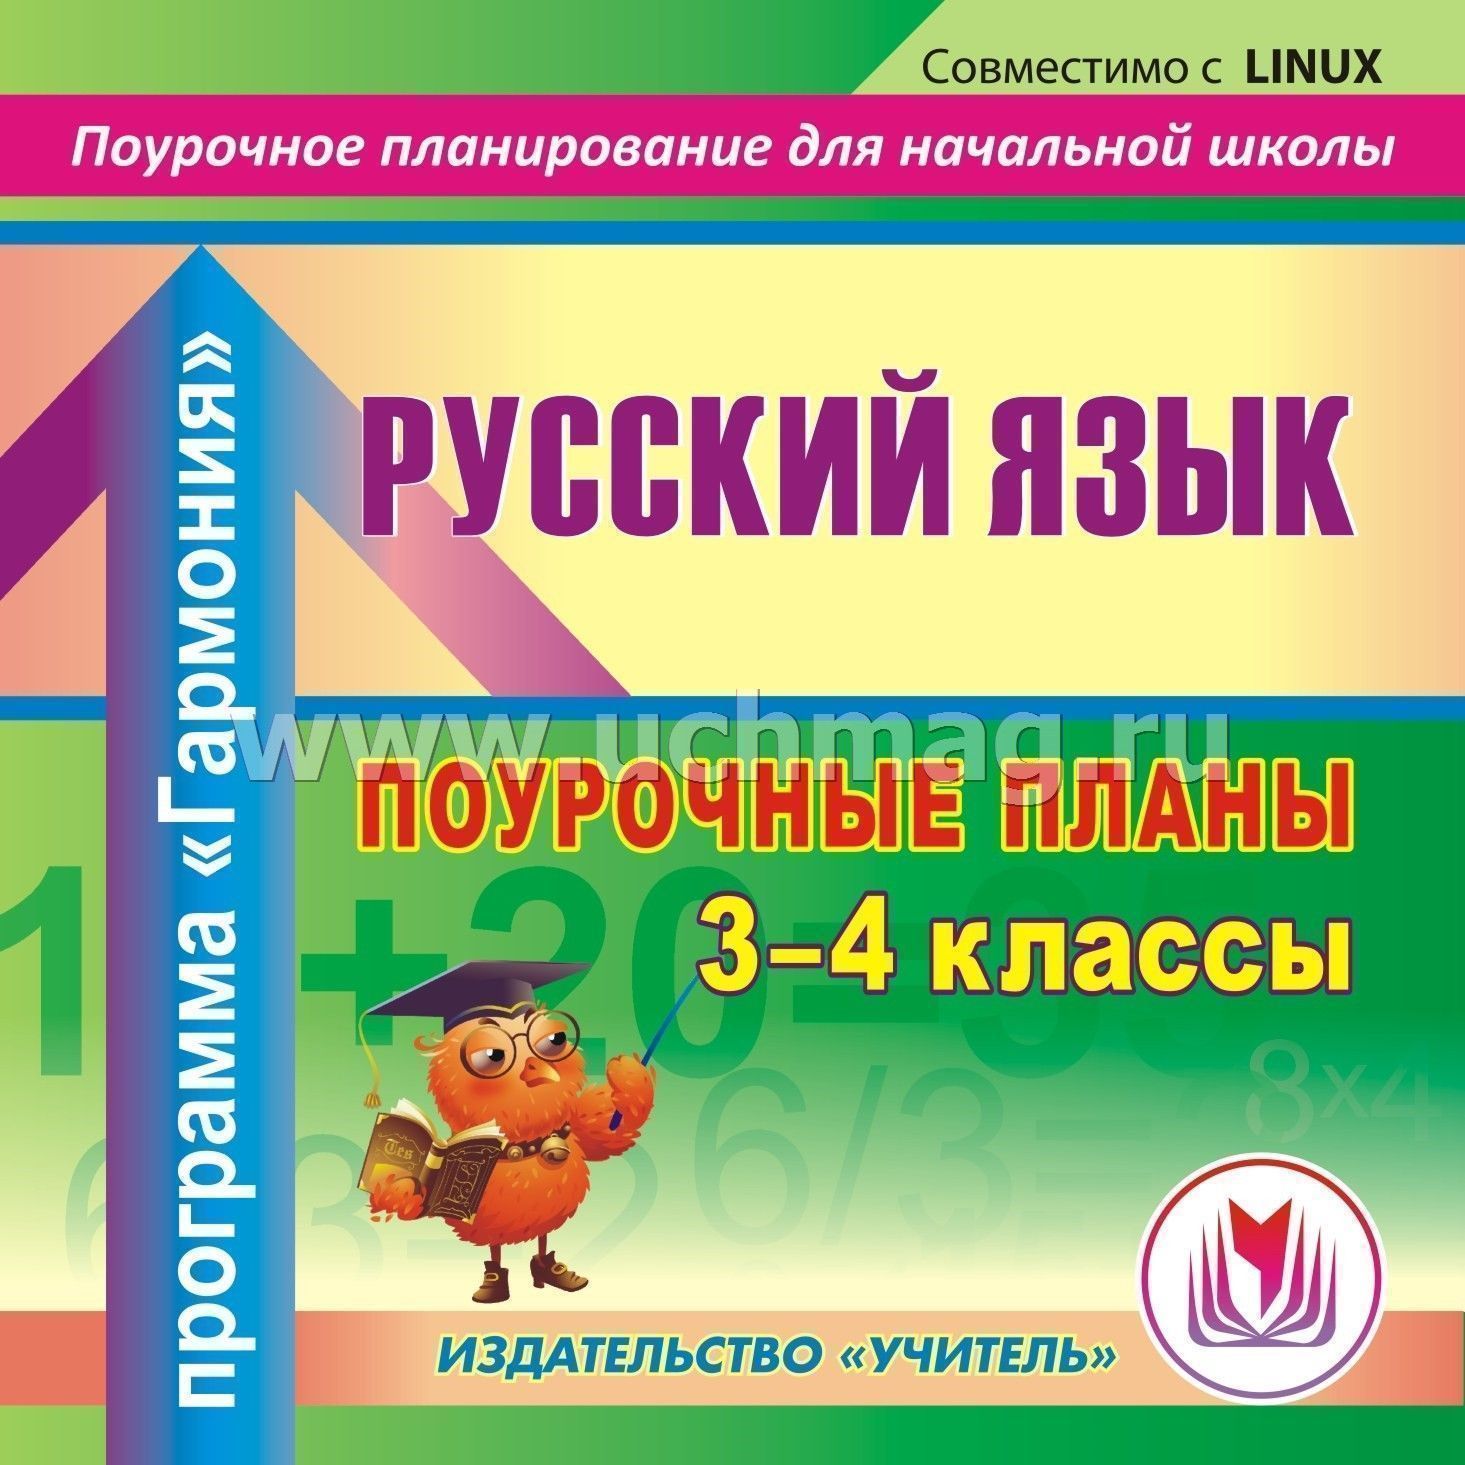 Где можно скачать поурочные разработки по русскому языку в коррекционном классе 10 класс